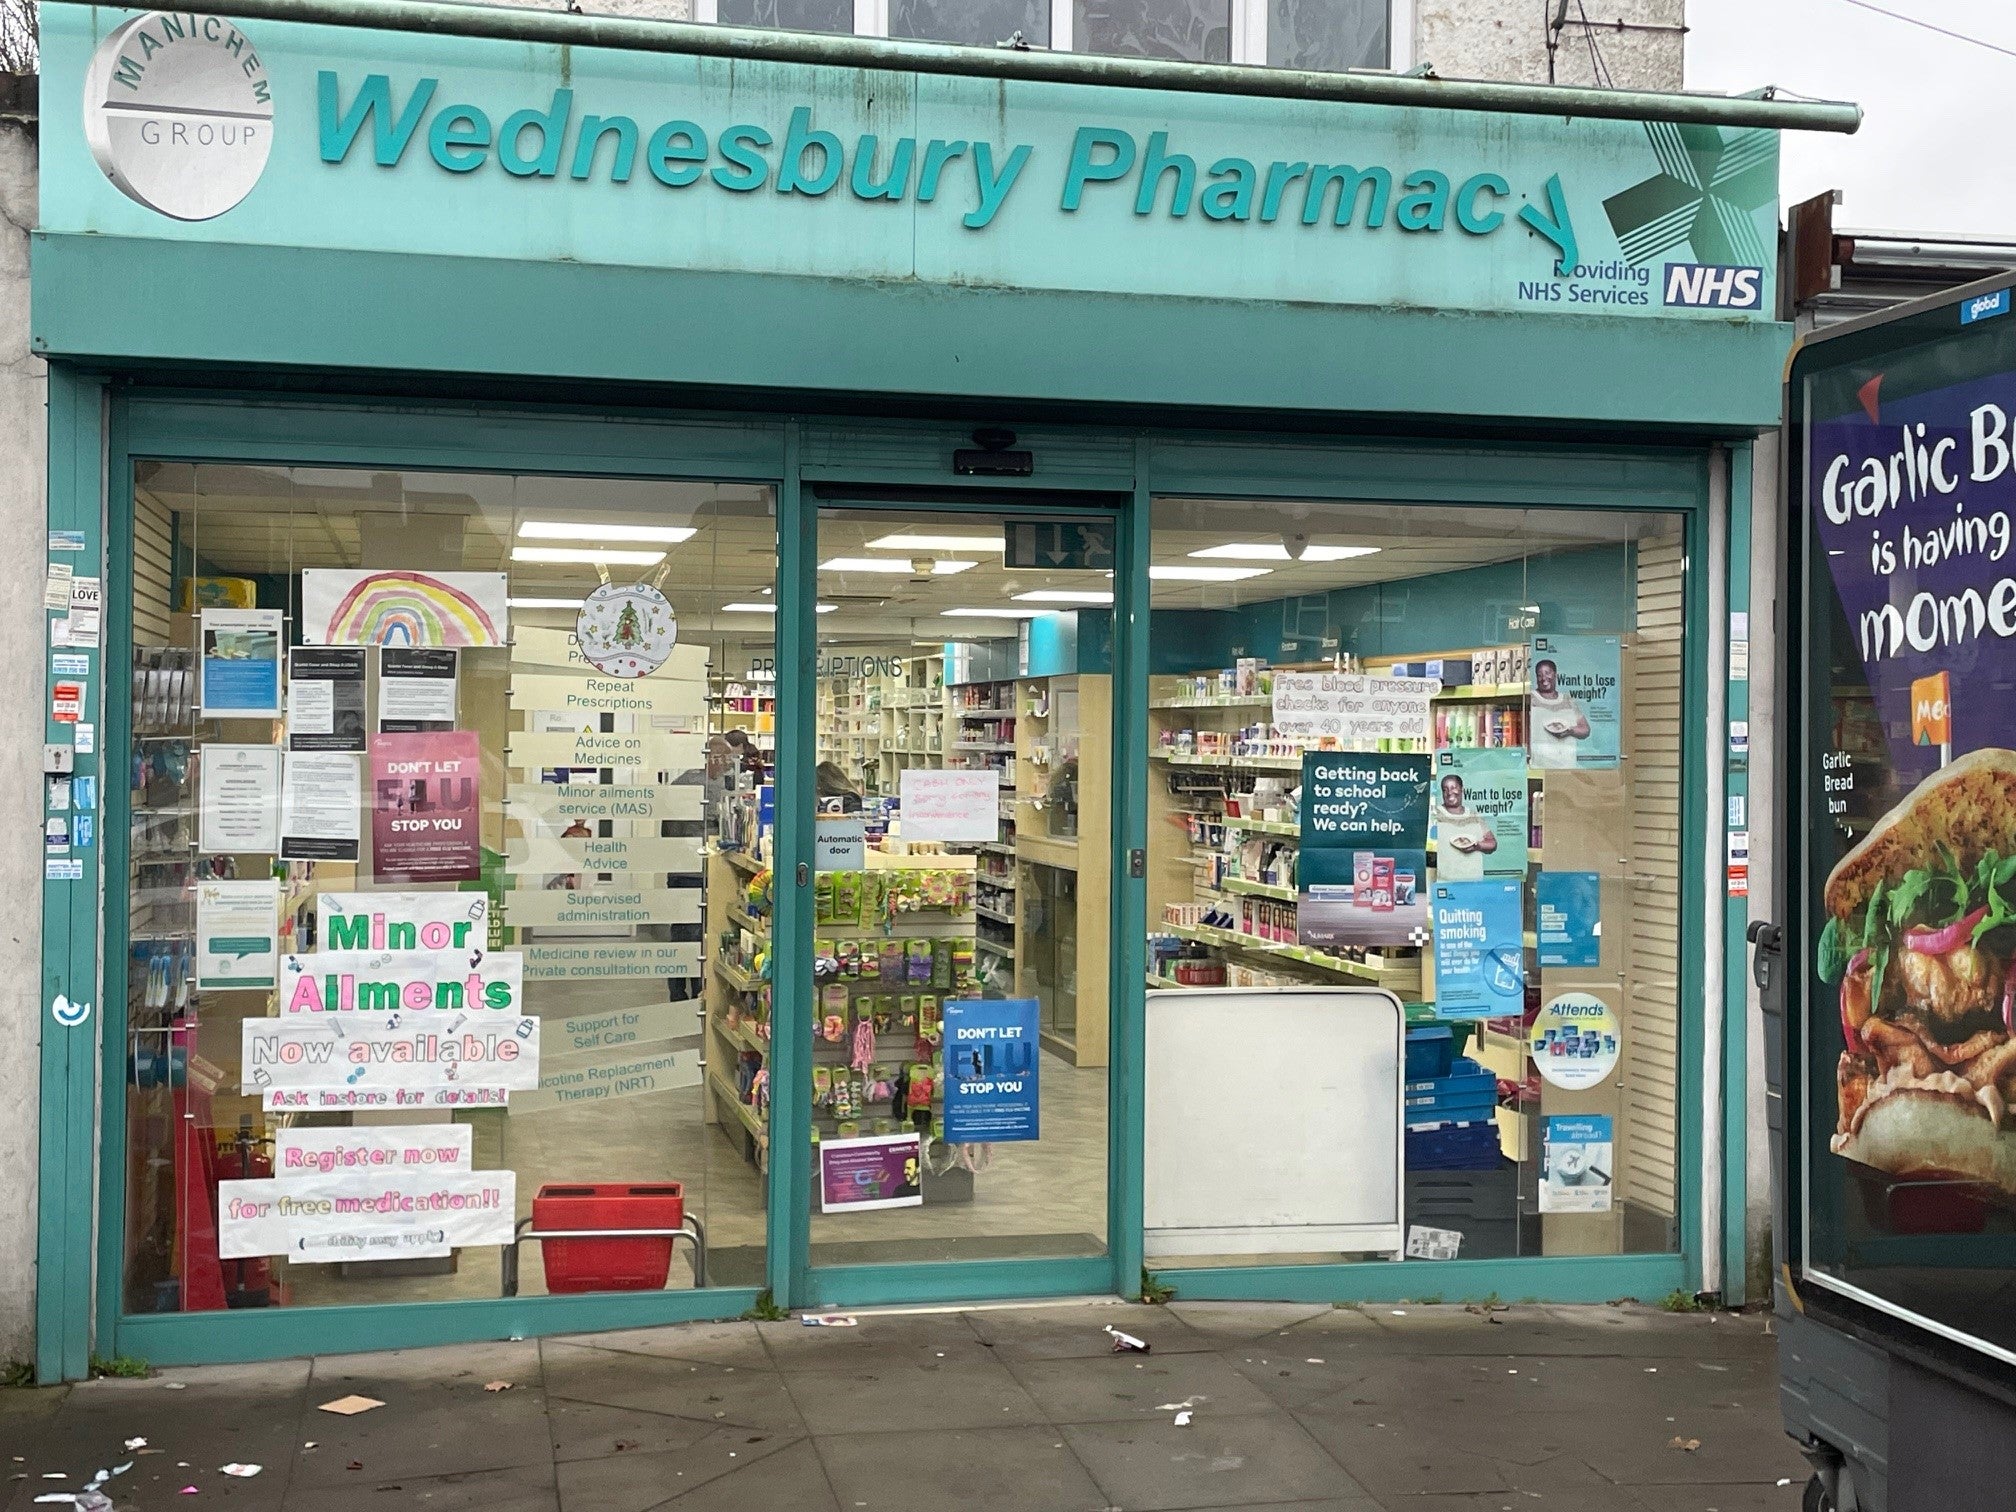 Wednesbury Pharmacy in Sandwell